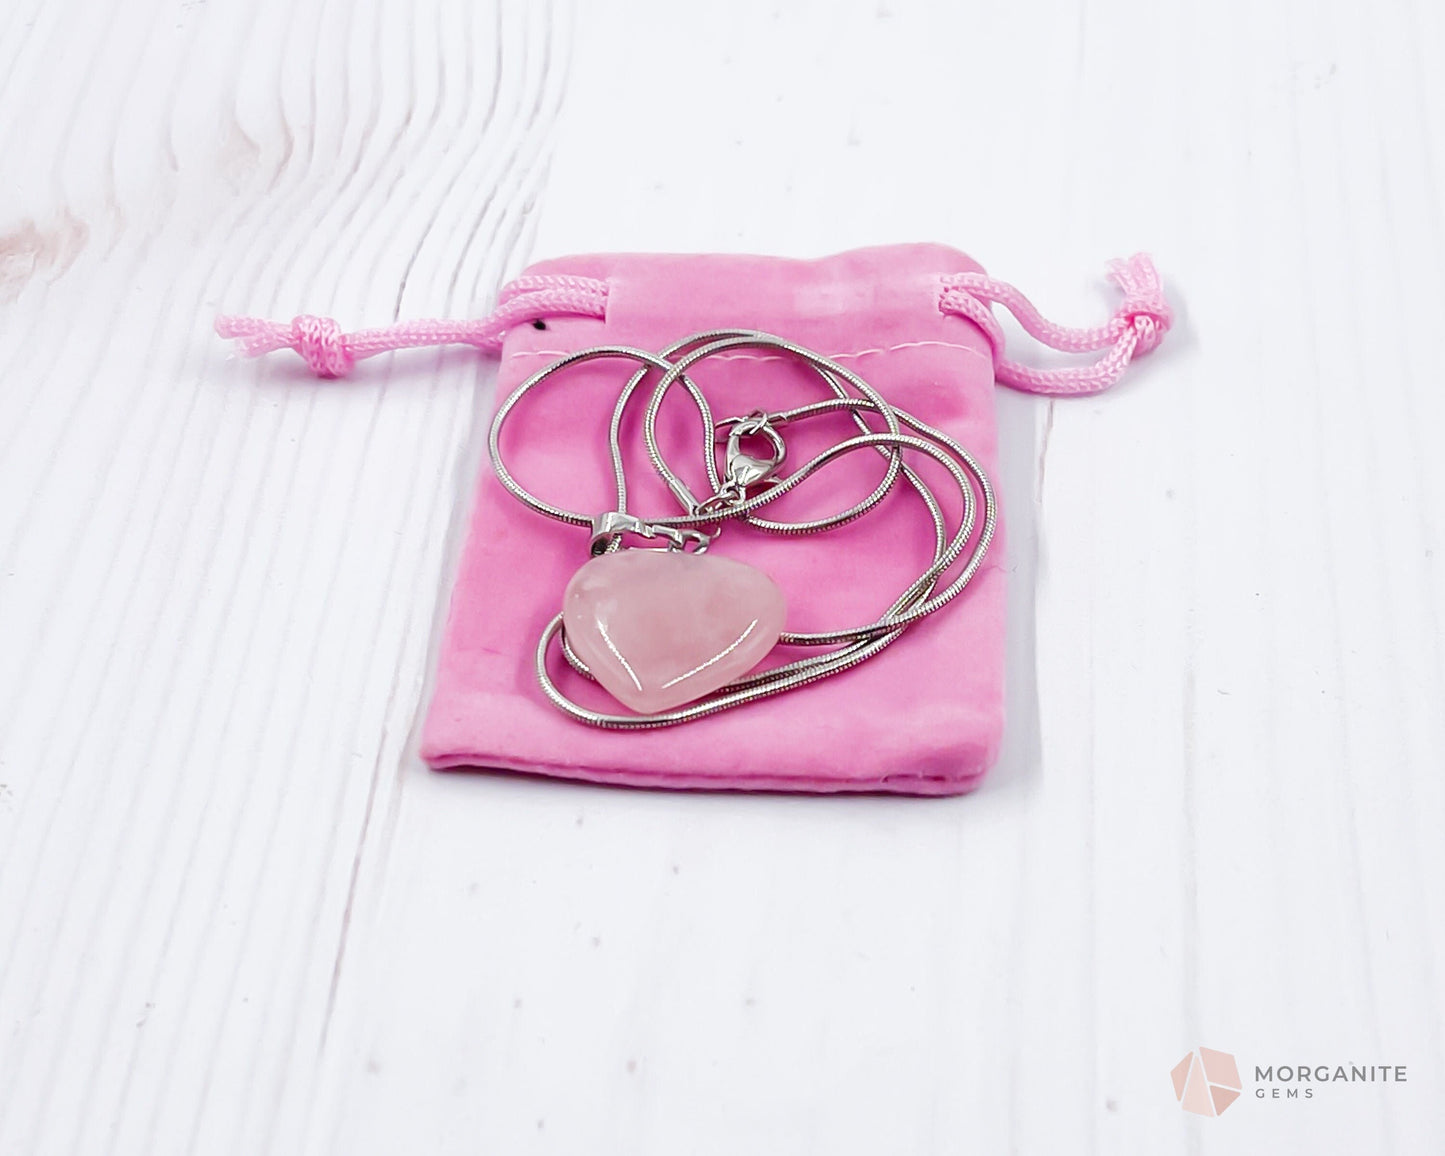 Heart Shaped Rose Quartz Pendant Necklace